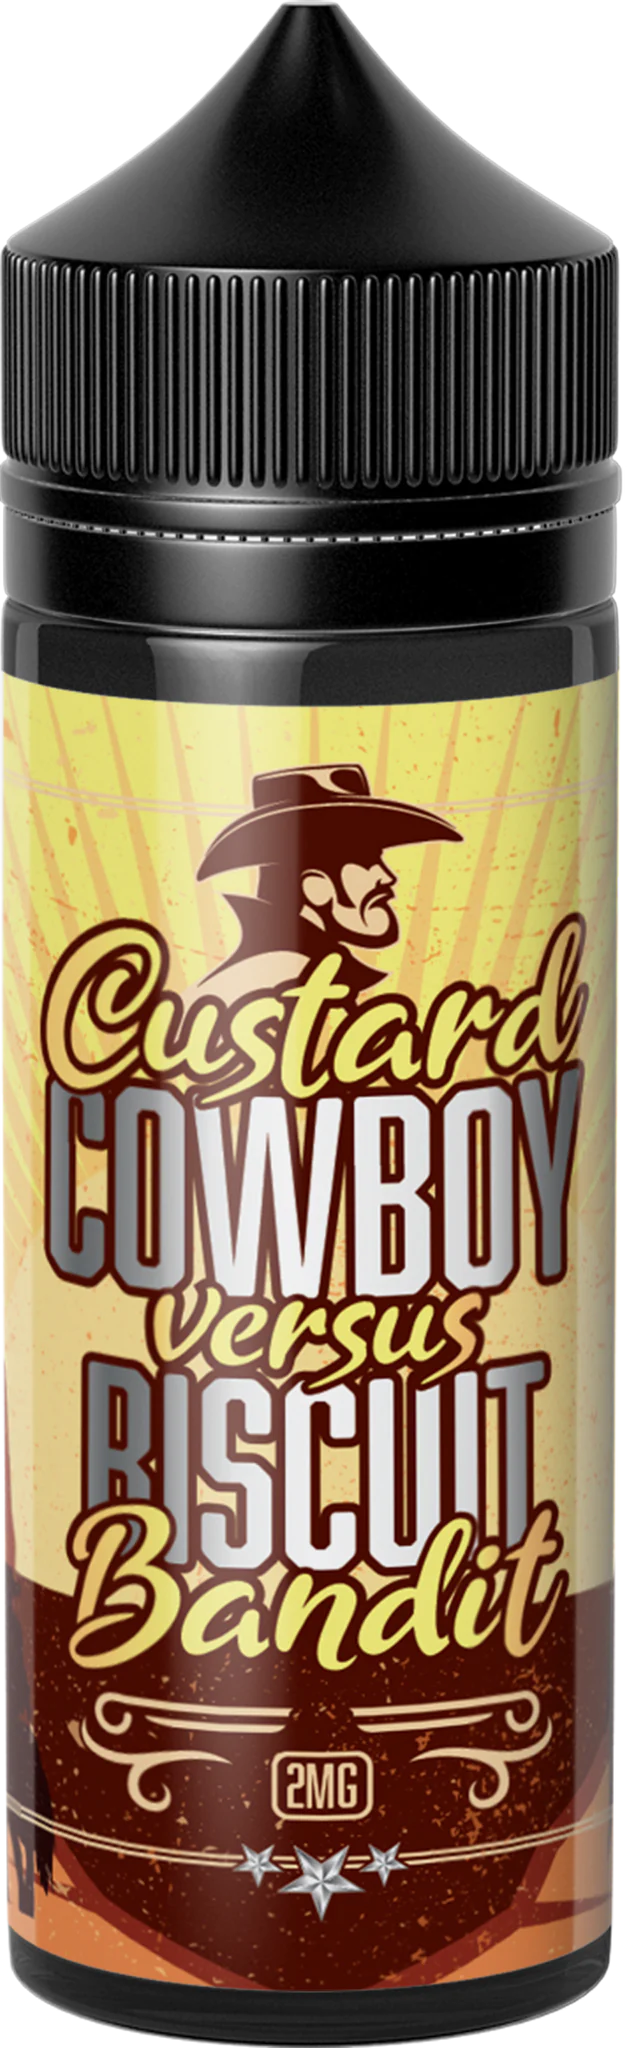 Custard Cowboy vs. Biscuit Bandit Flavor Shot